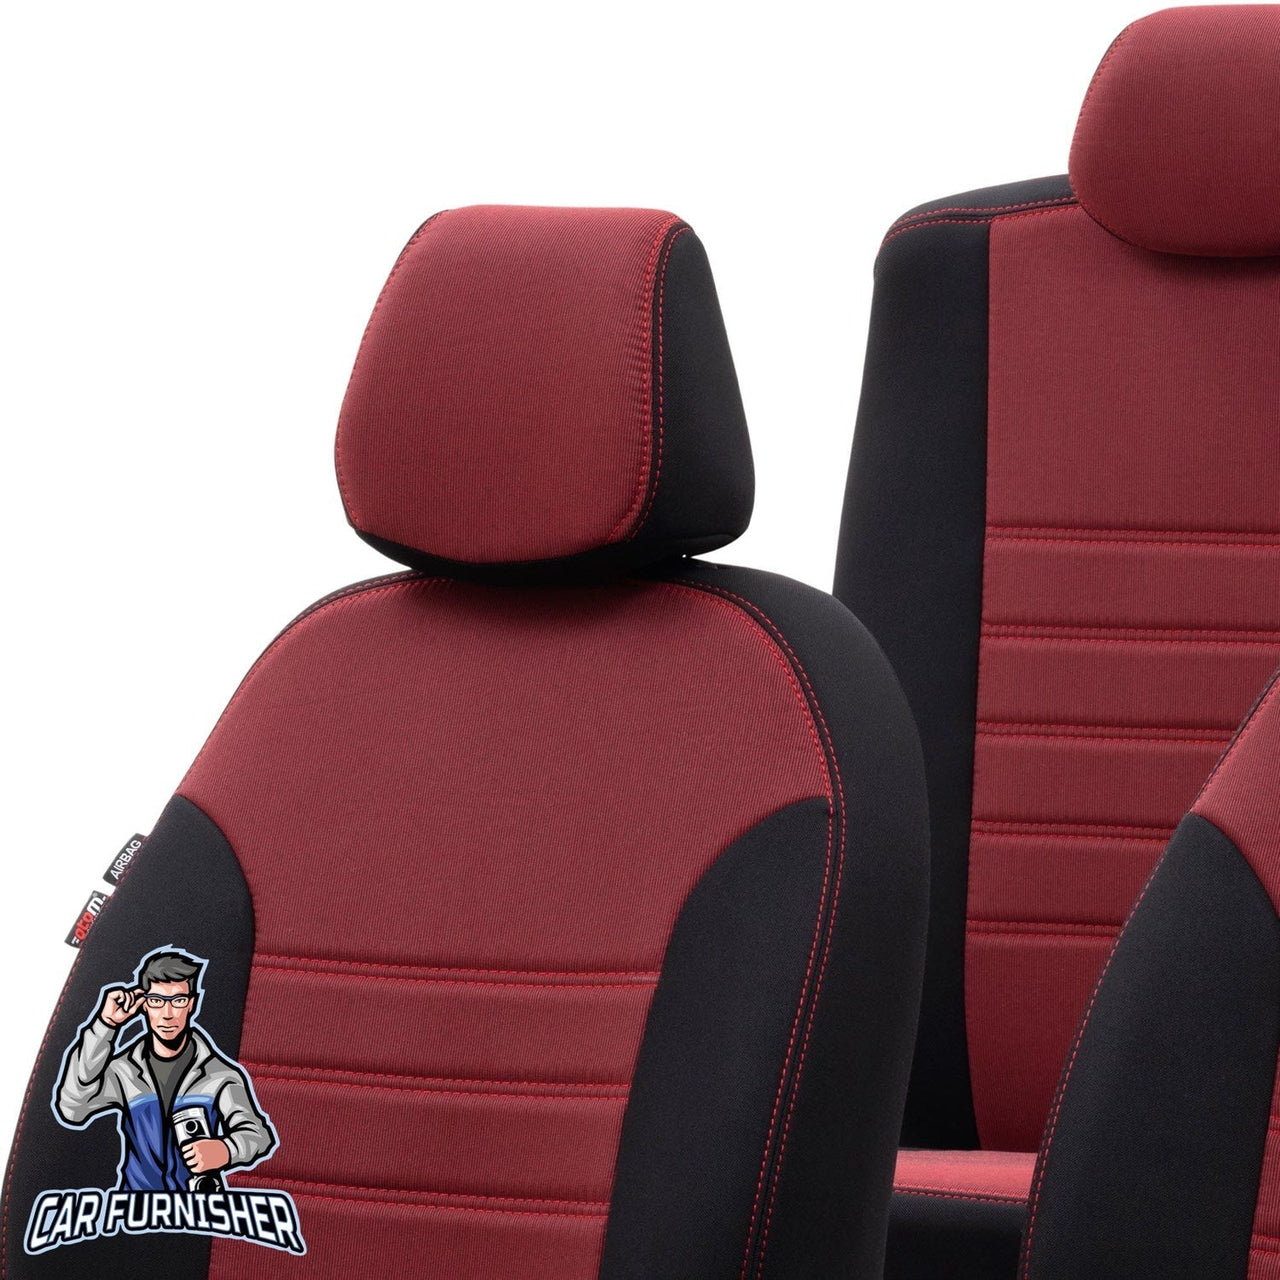 Volkswagen Touareg Seat Cover Original Jacquard Design Dark Beige Jacquard Fabric